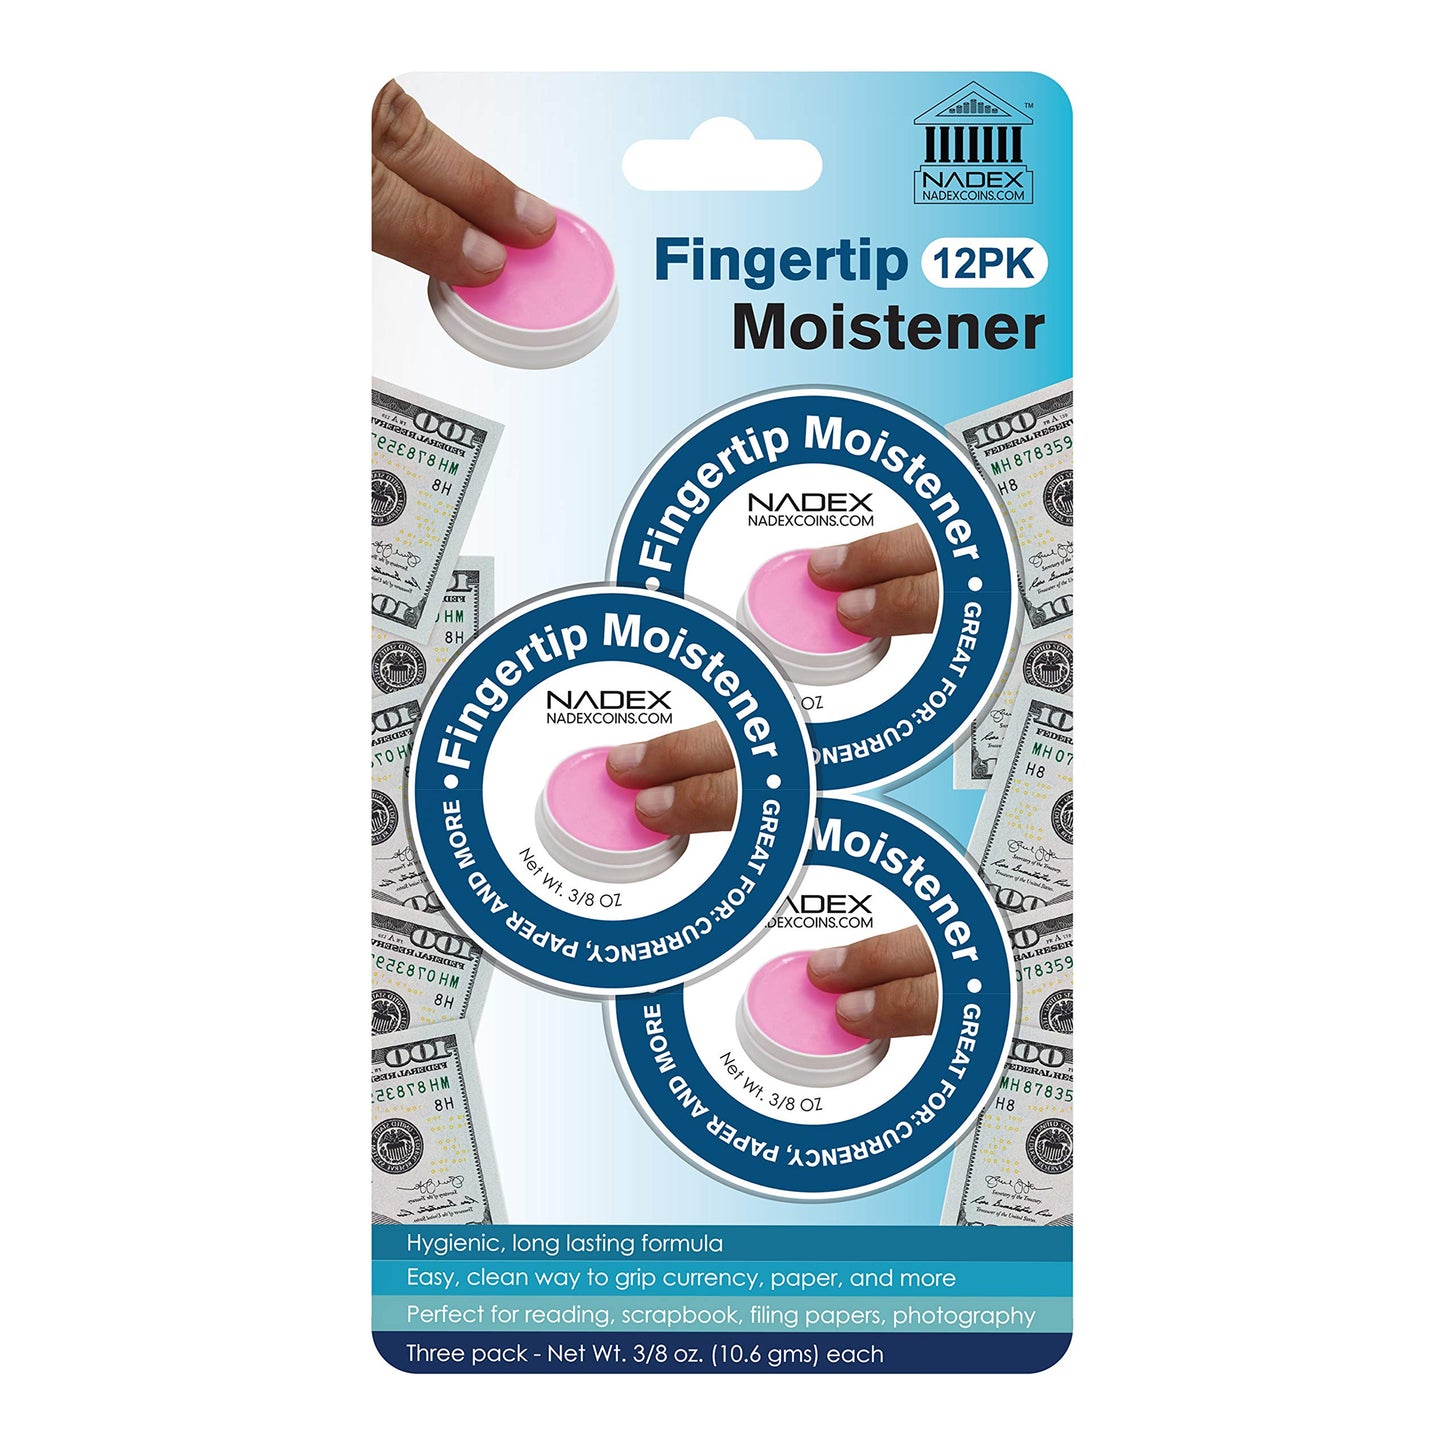 Fingertip Moistener, 12 Pack